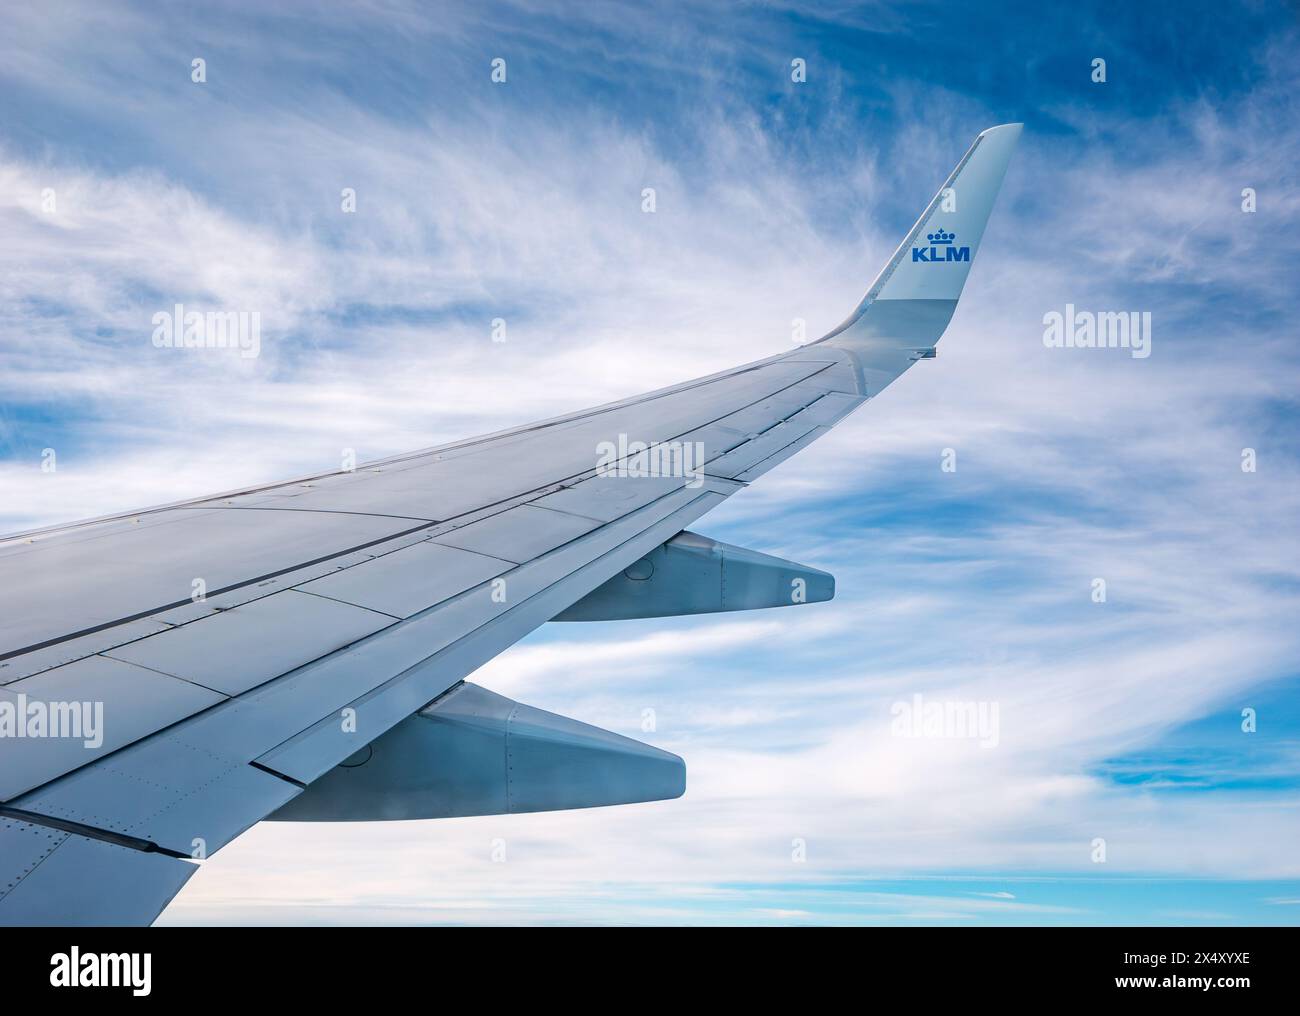 Vue depuis la fenêtre de l'avion KLM de l'aile de l'avion contre les nuages tordus et le ciel Banque D'Images